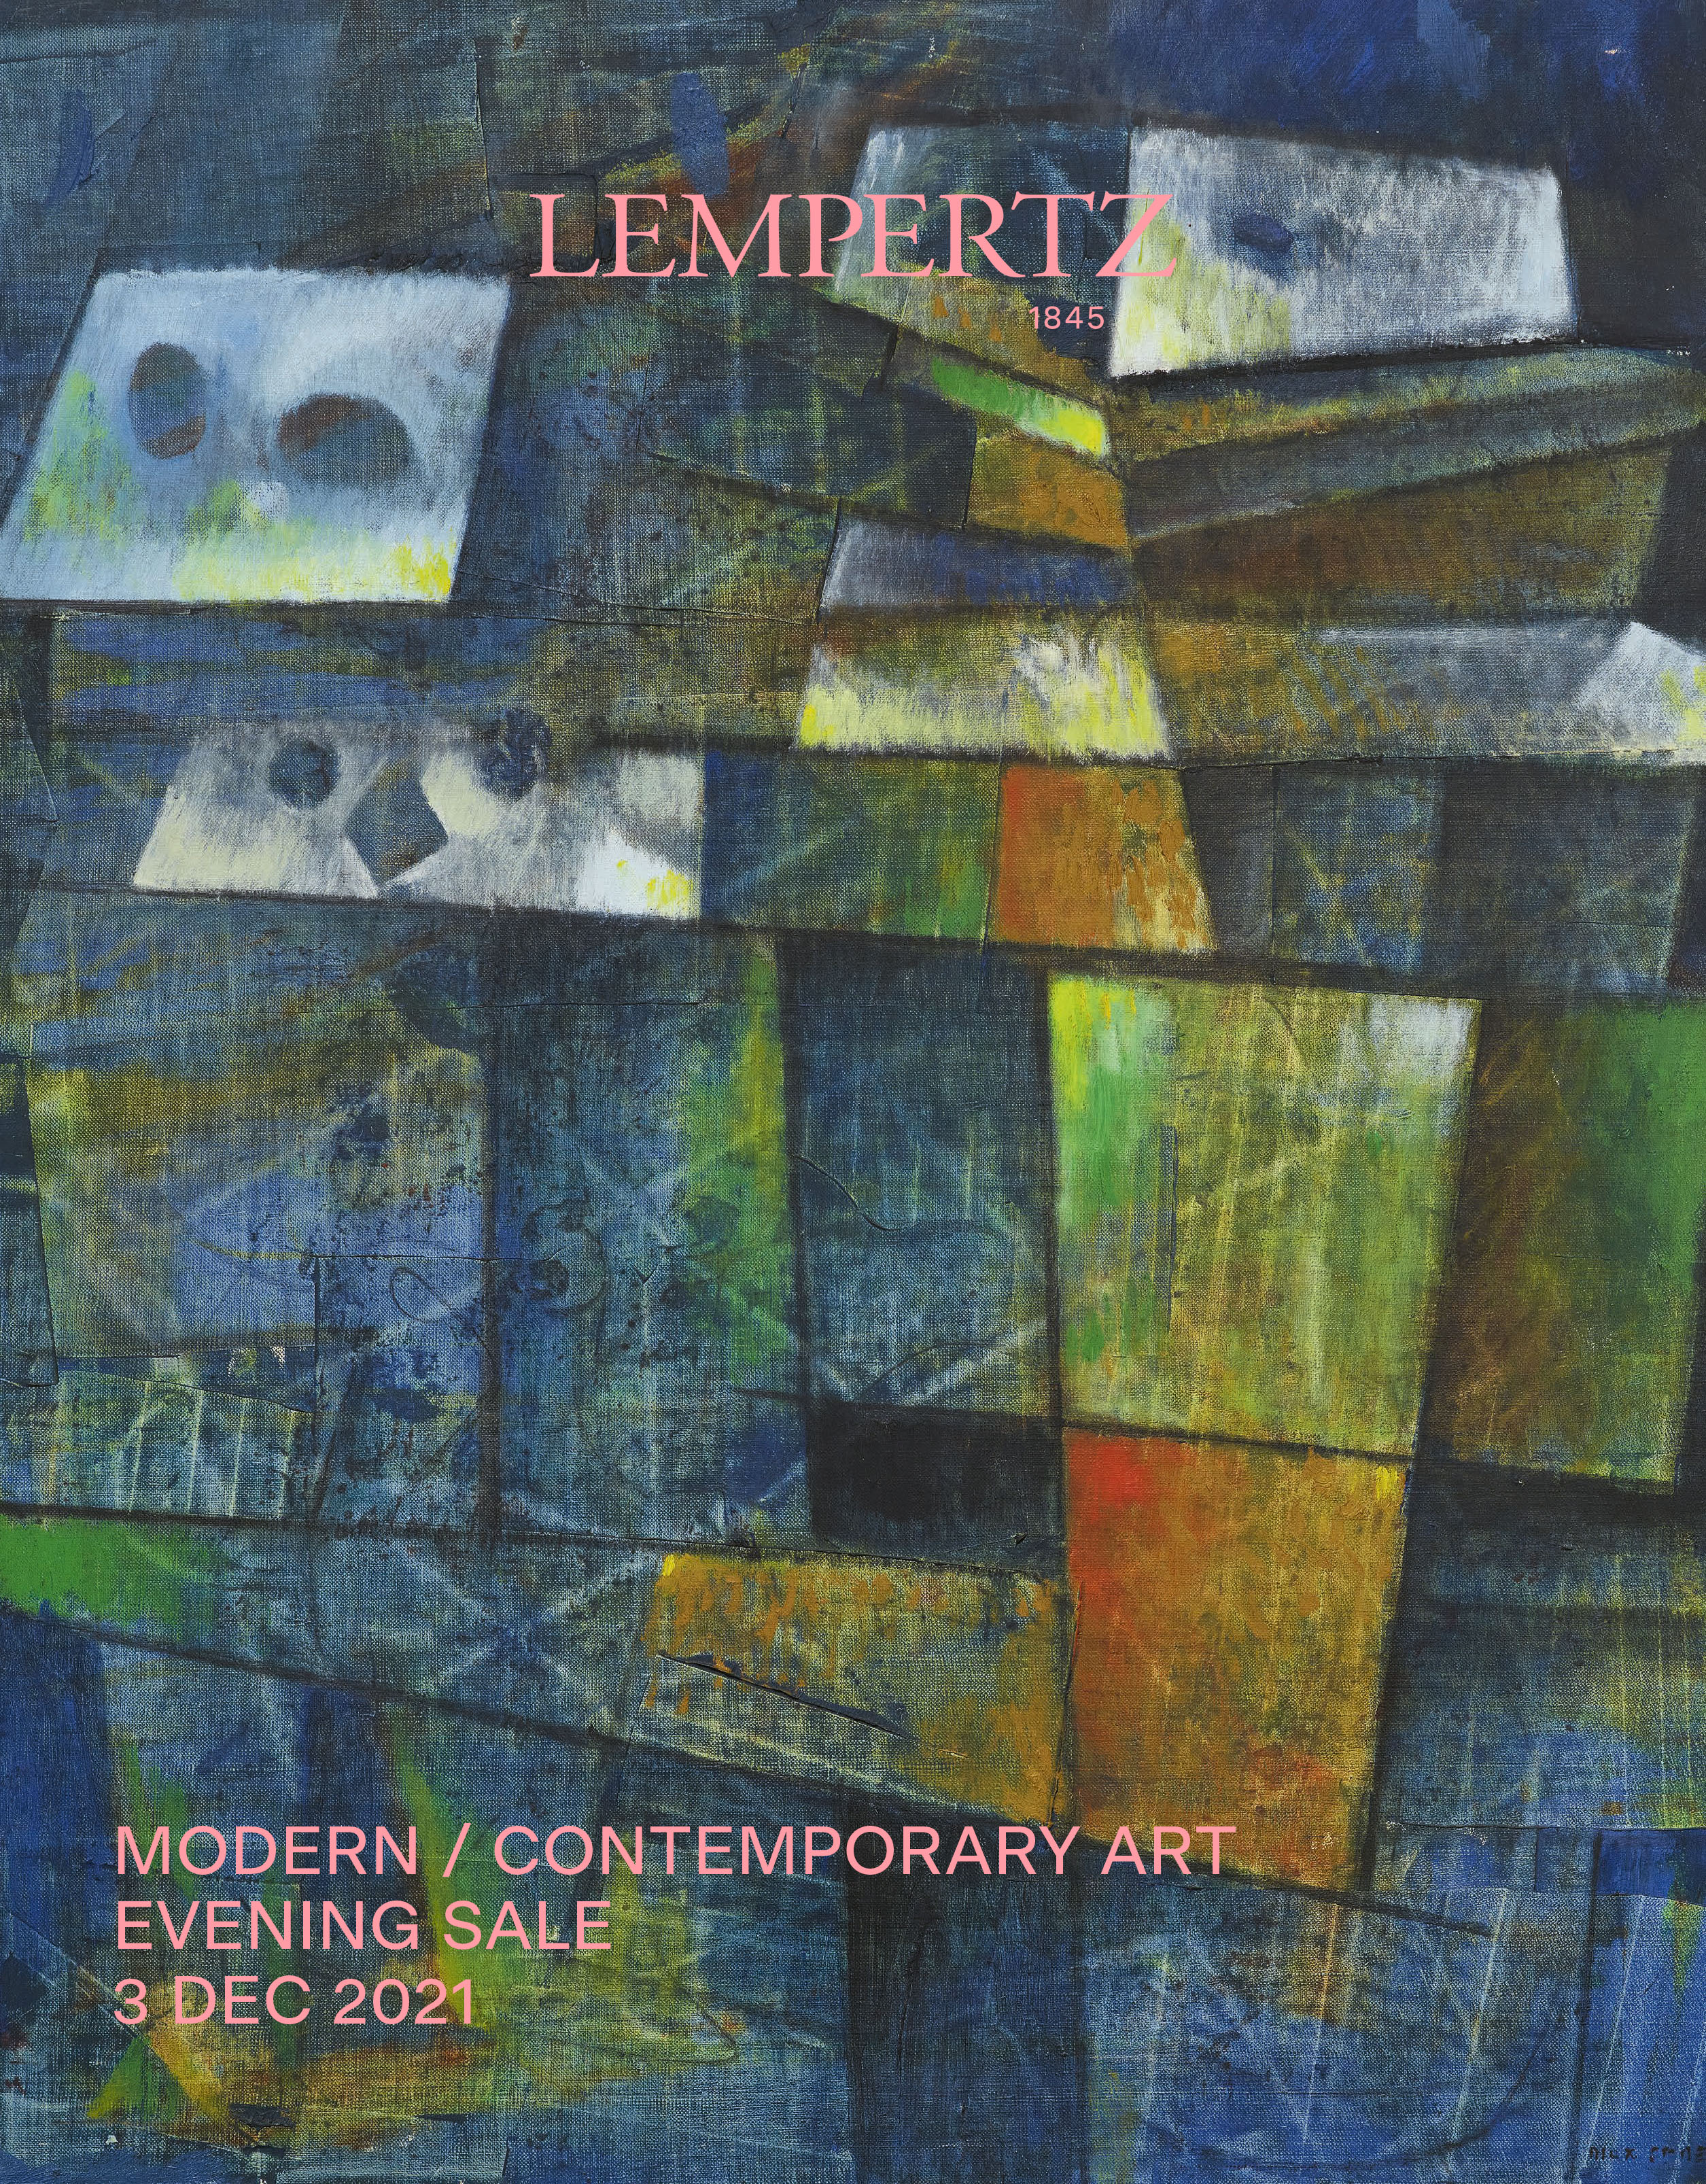 Auktionskatalog - Evening Sale - Moderne und Zeitgenössische Kunst - Online Katalog - Auktion 1187 – Ersteigern Sie hochwertige Kunst in der nächsten Lempertz-Auktion!